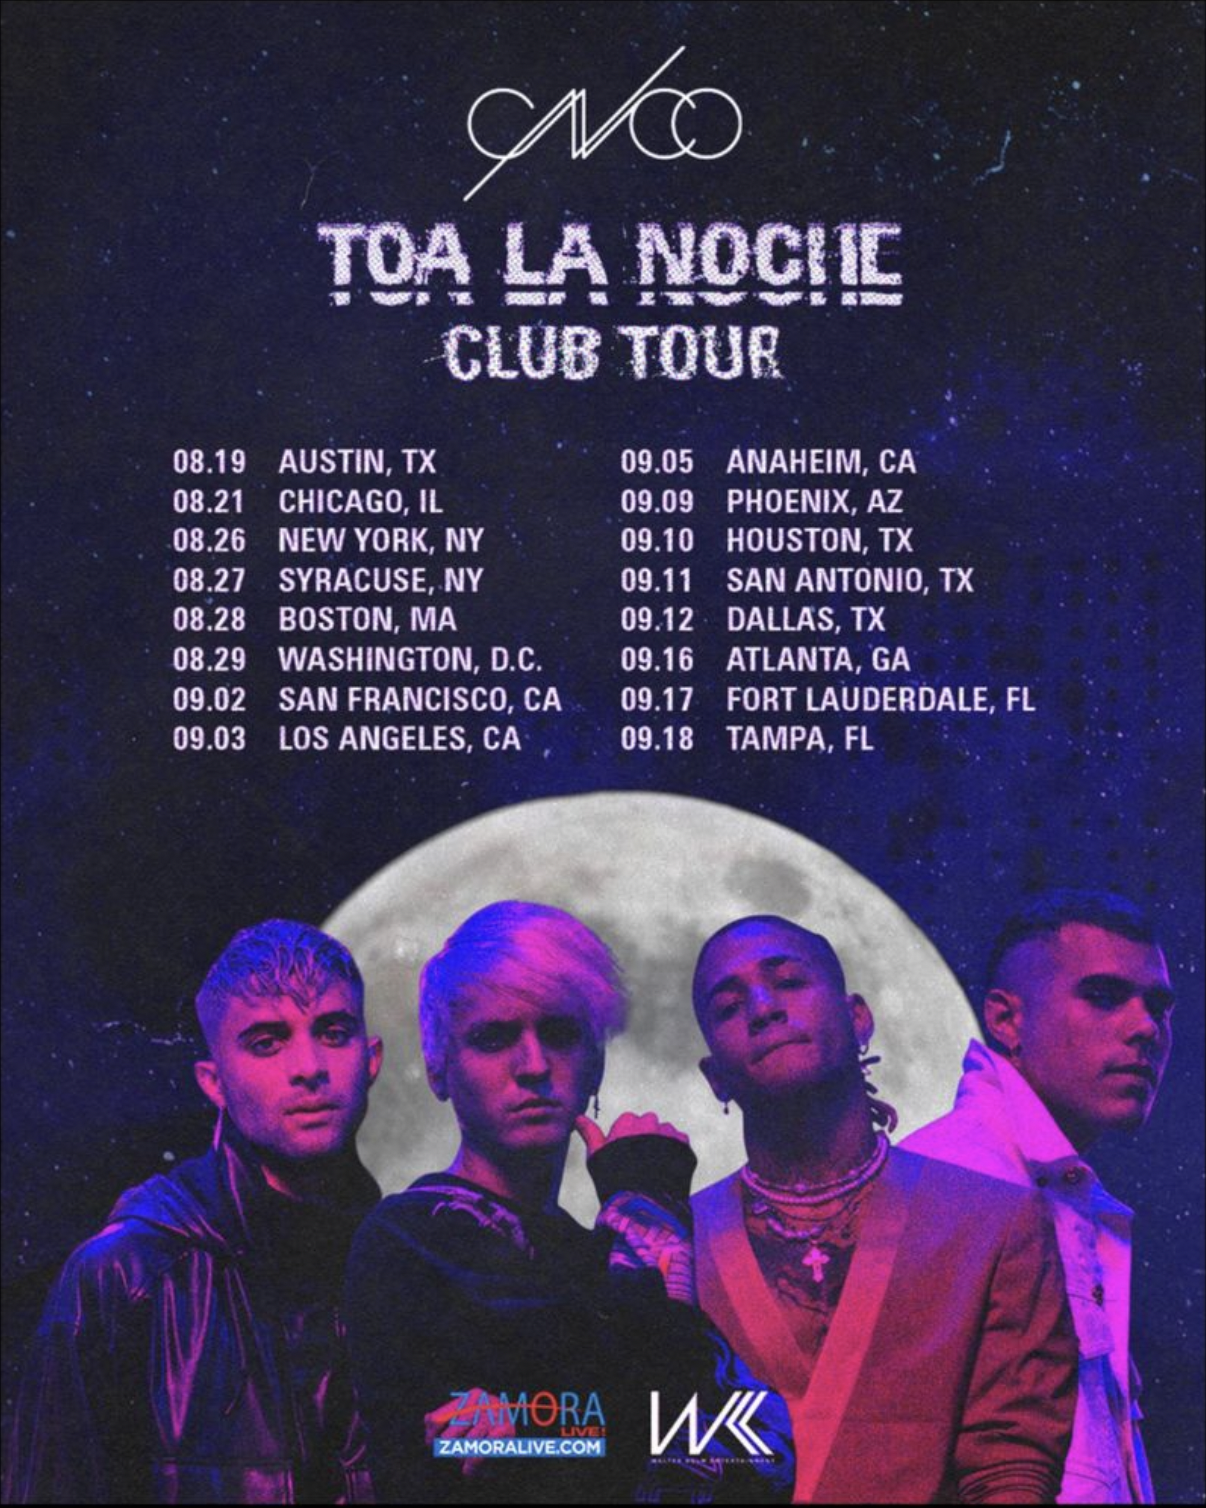 CNCO Toa La Noche Club Tour